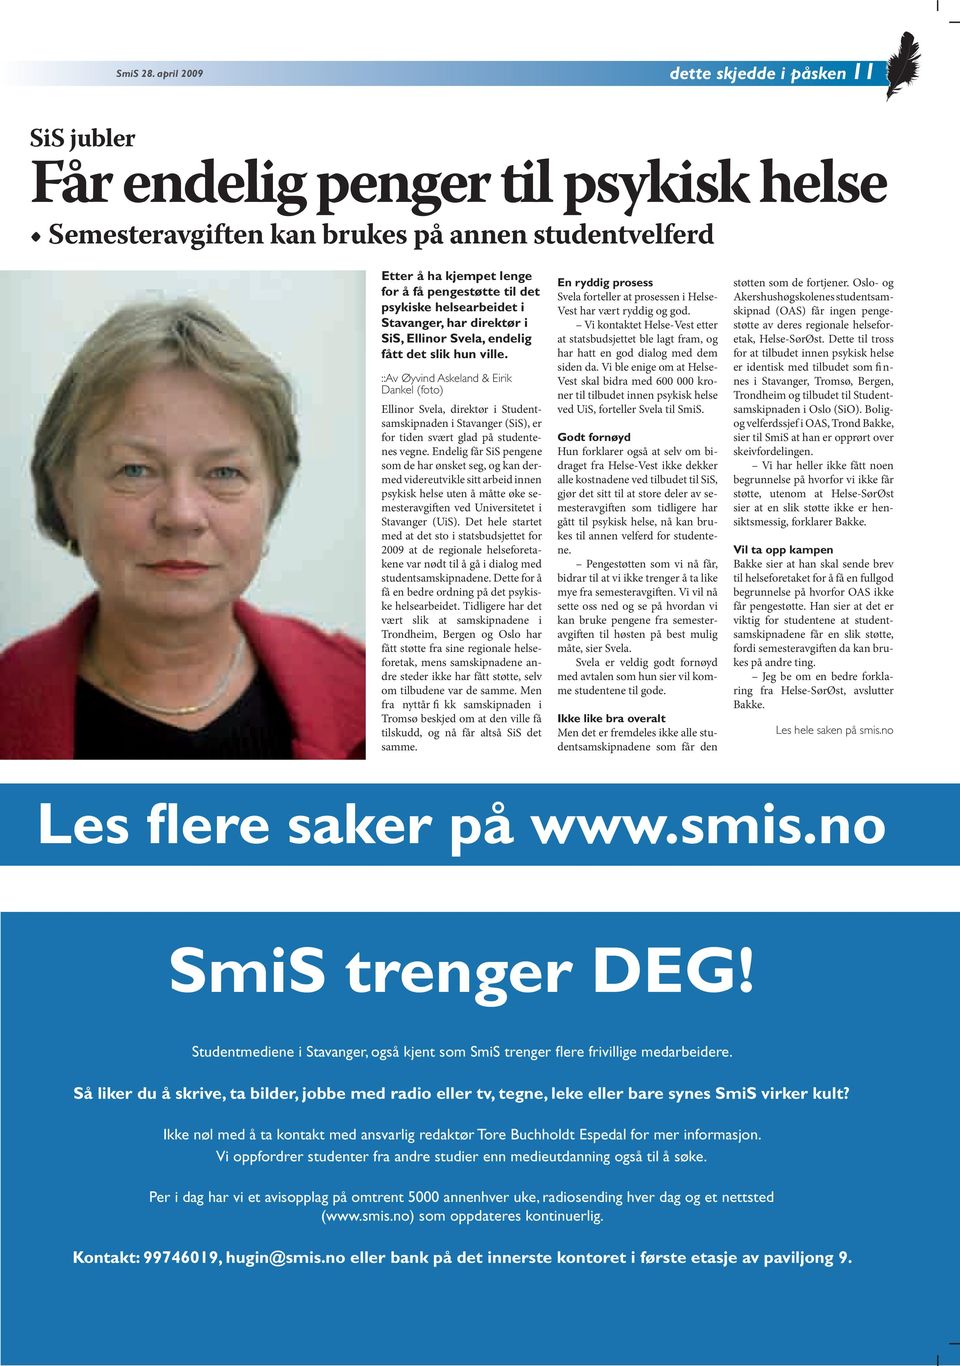 helsearbeidet i Stavanger, har direktør i SiS, Ellinor Svela, endelig fått det slik hun ville.